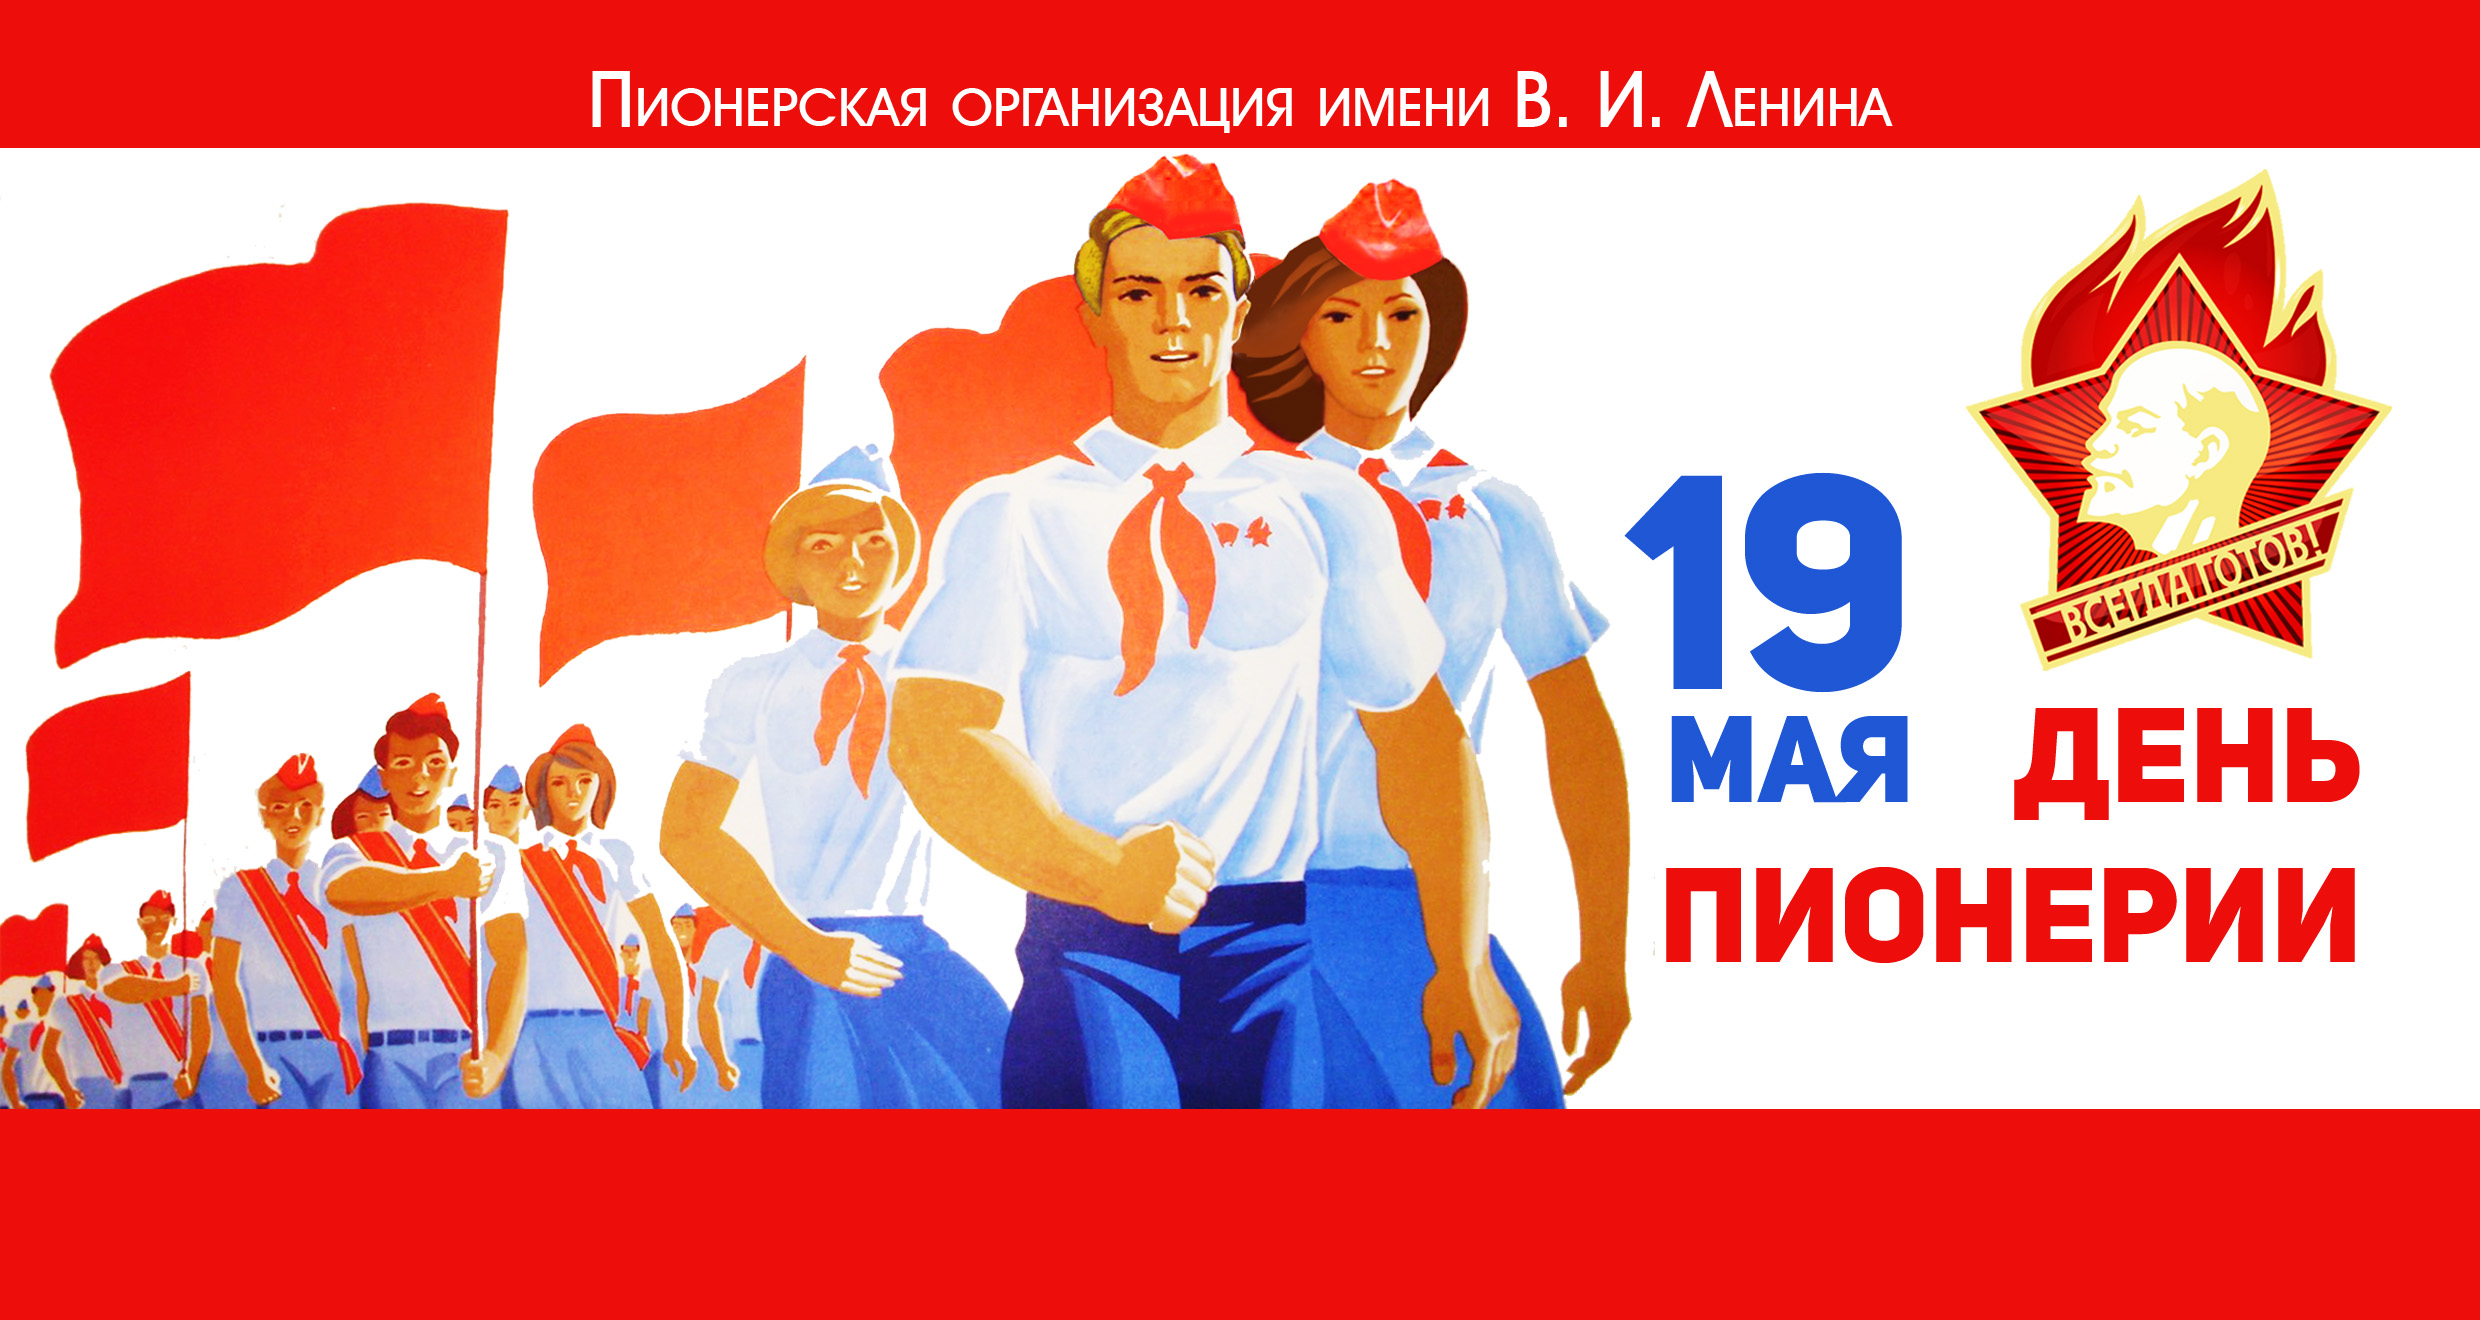 19 мая 2021 г. 19 Мая день Пионерской организации. Дата рождения Пионерской организации в СССР. 100 Лет Пионерской организации. День пи.